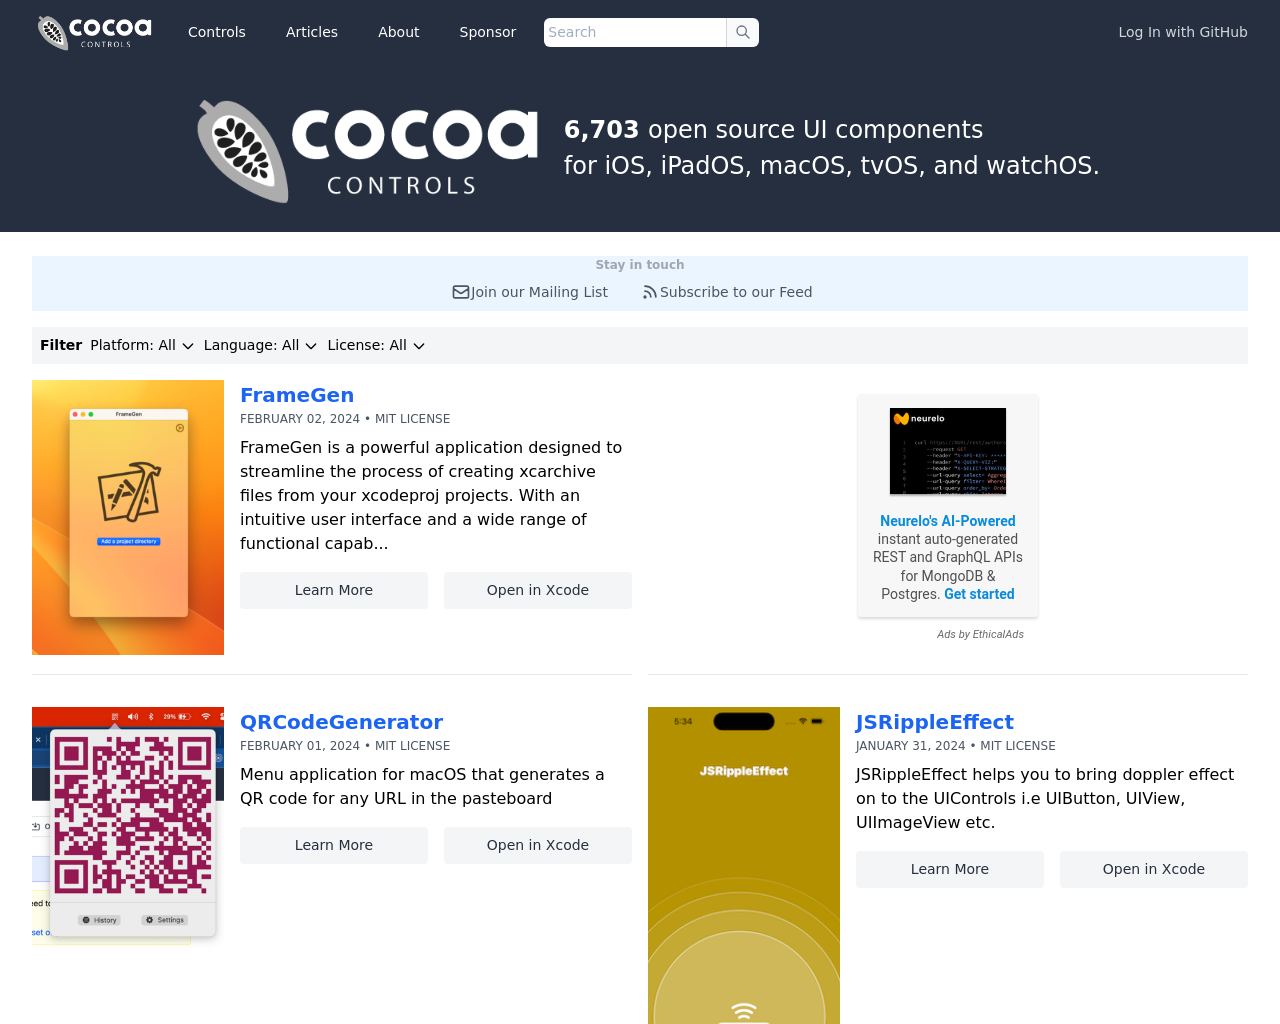 cocoacontrols.com